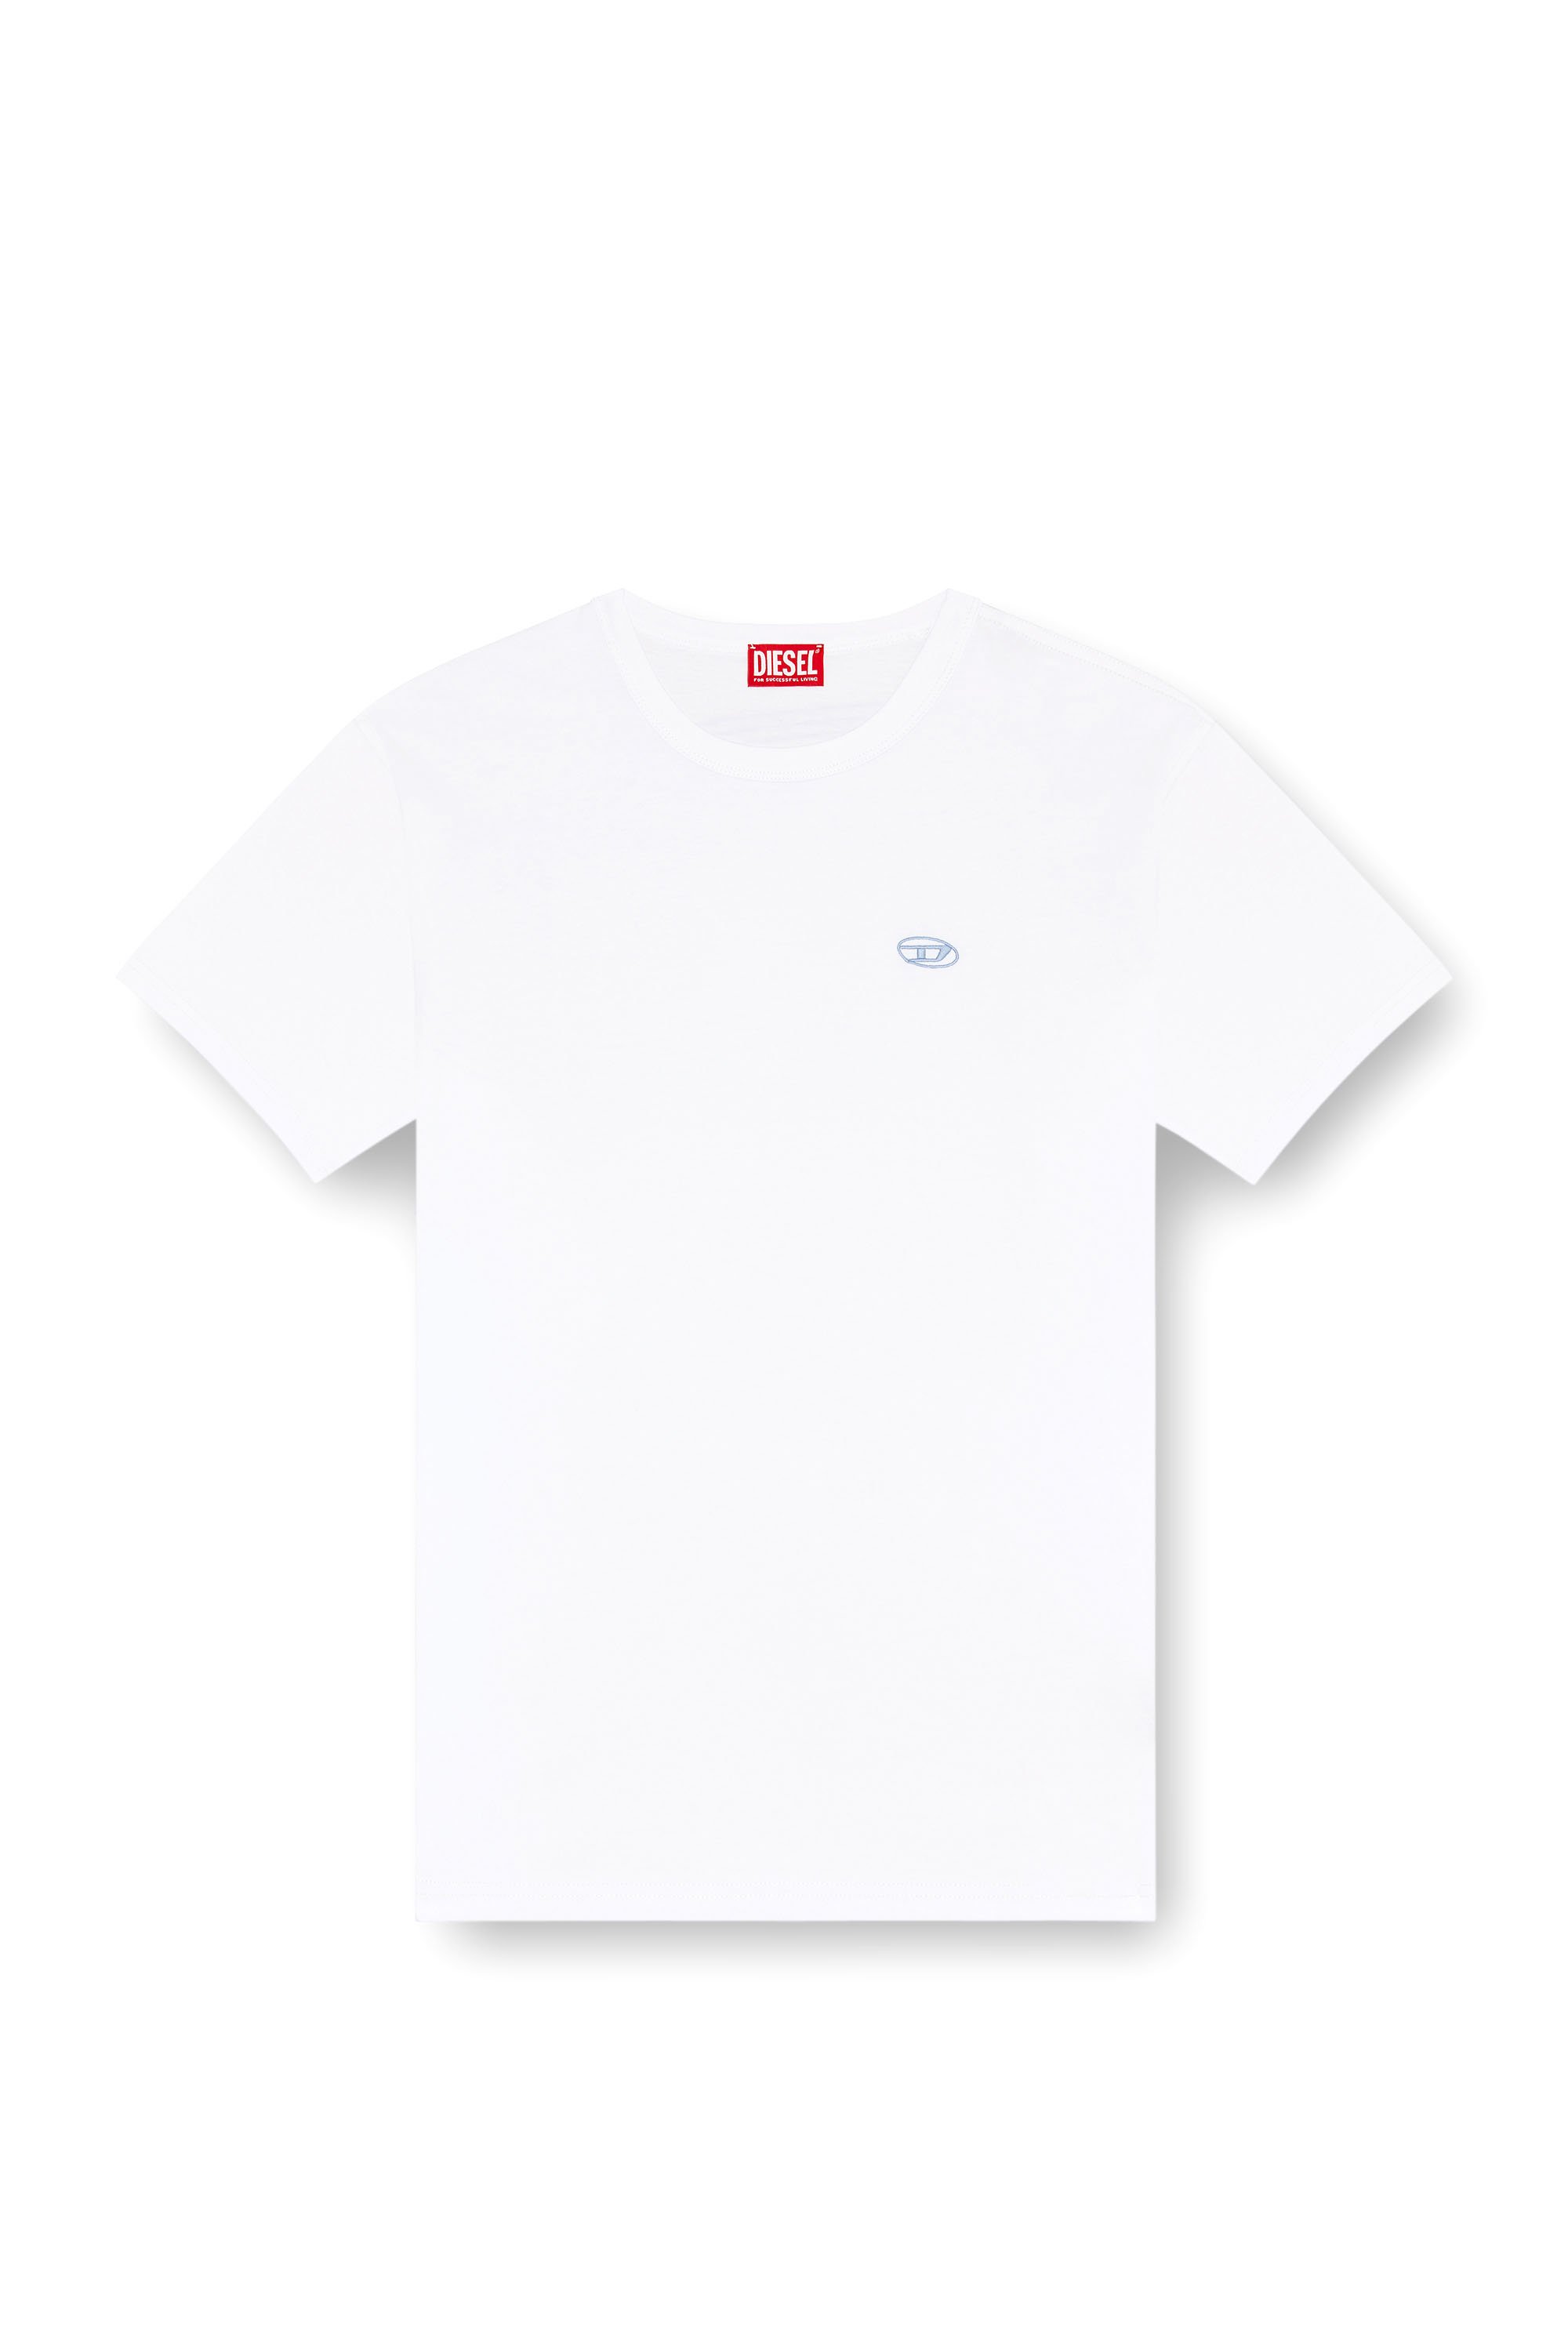 Diesel - T-BOXT-K18, Homme T-shirt avec imprimé Oval D et broderie in Blanc - Image 3